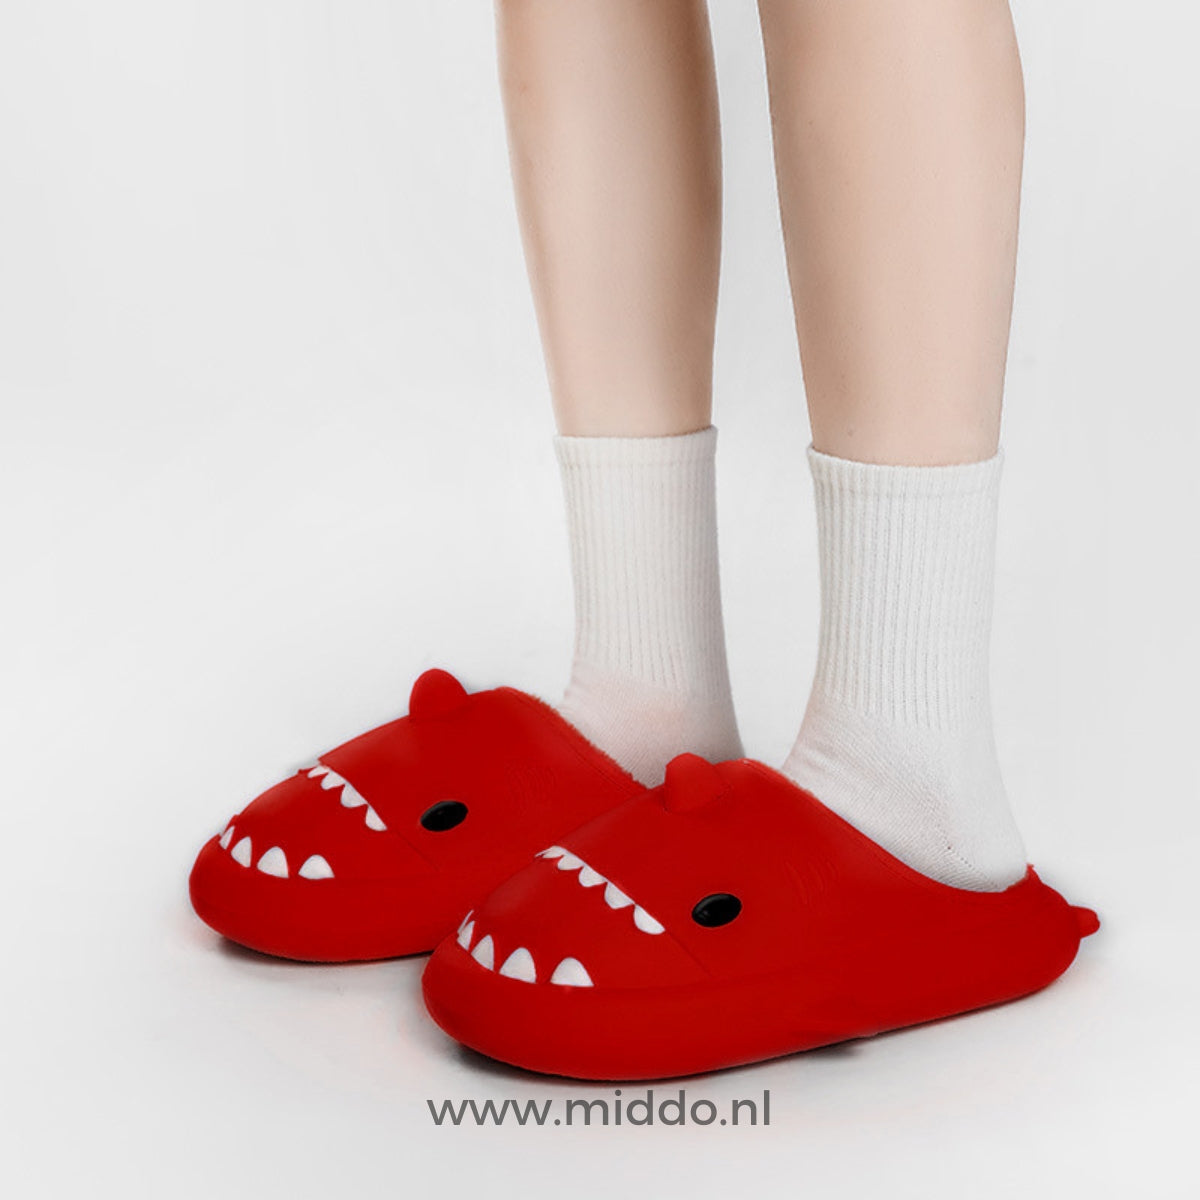 Winter Sharkies™ -  Warme voeten in stijl!